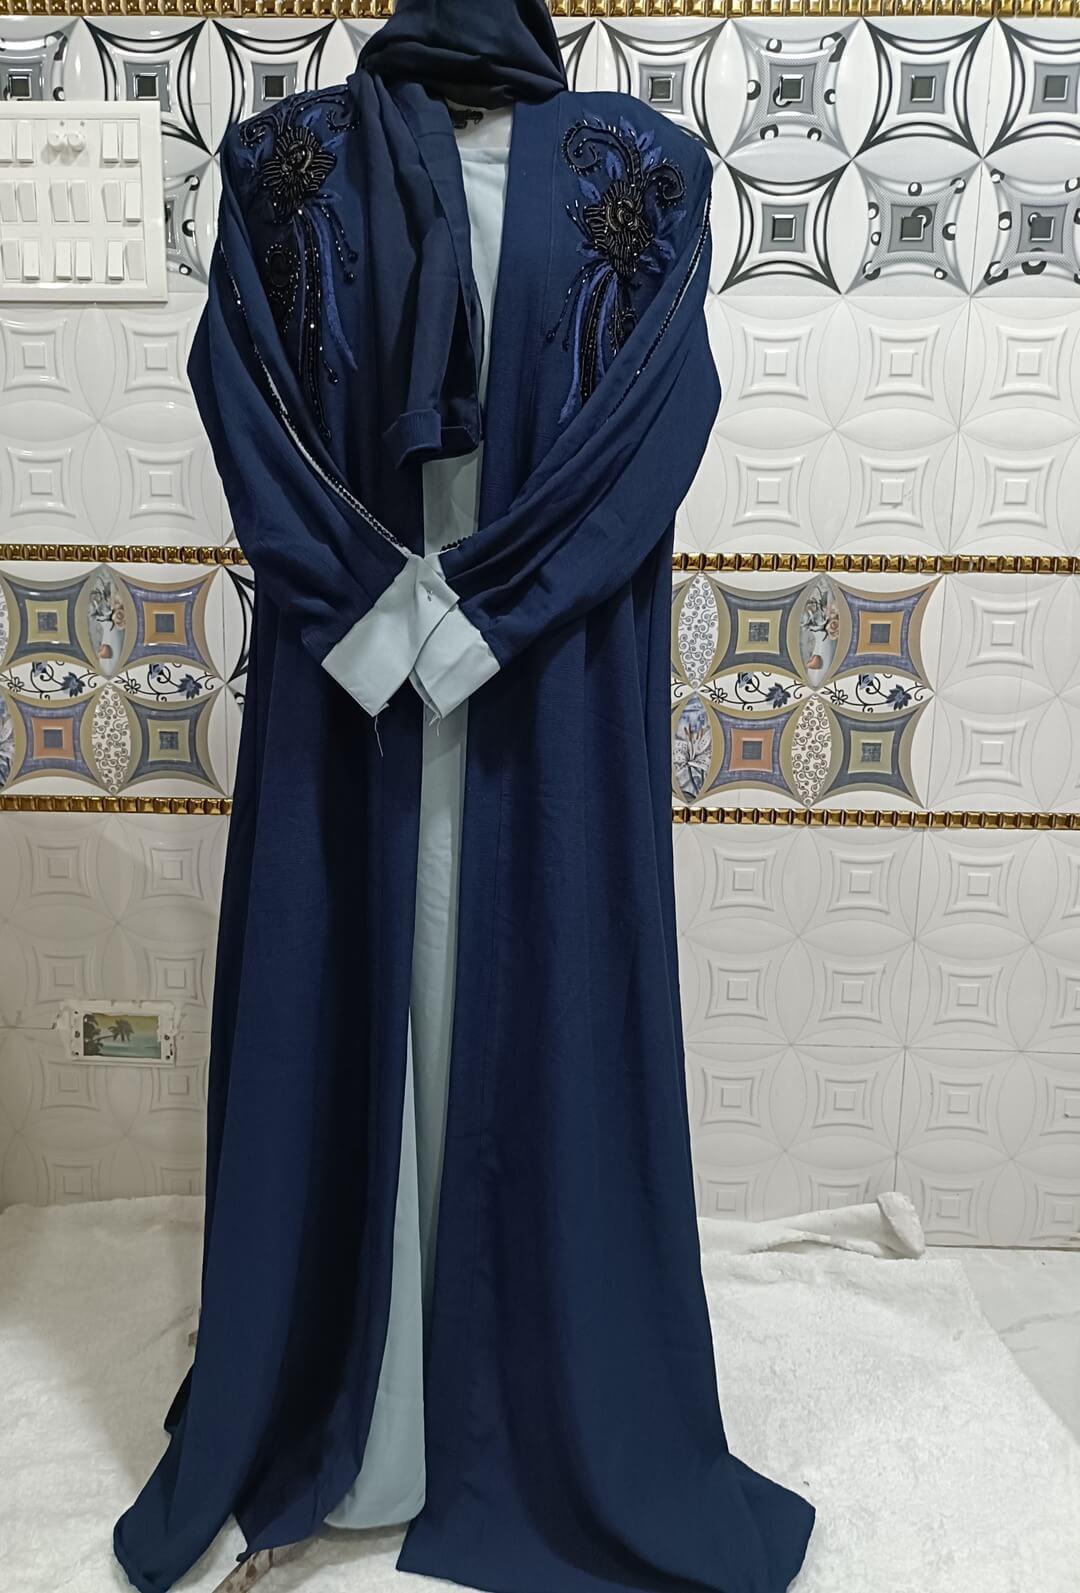 Blue Shrug Abaya With Handwork Design